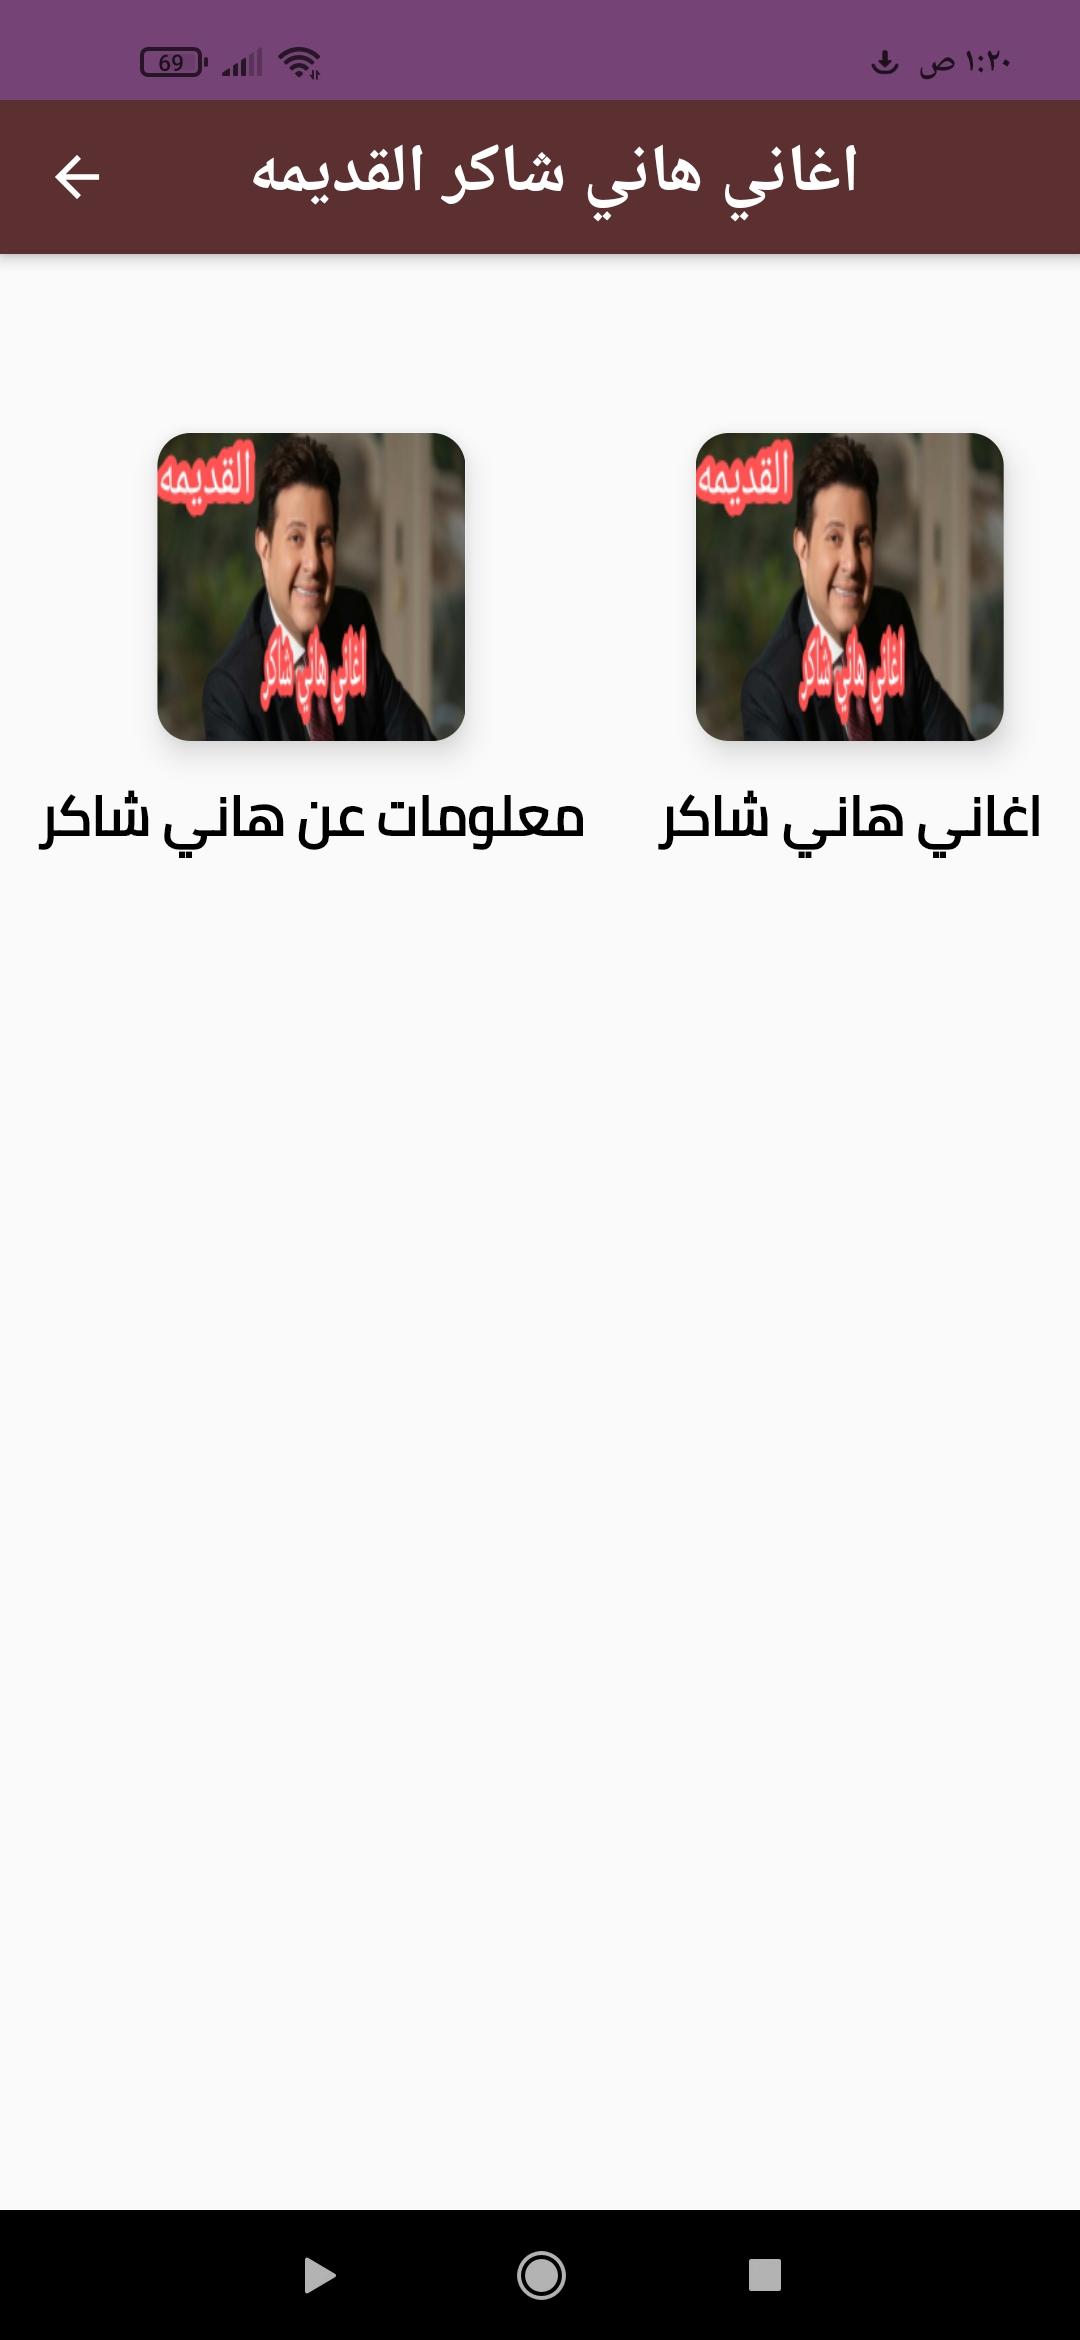 اغاني هاني شاكر القديمه APK für Android herunterladen